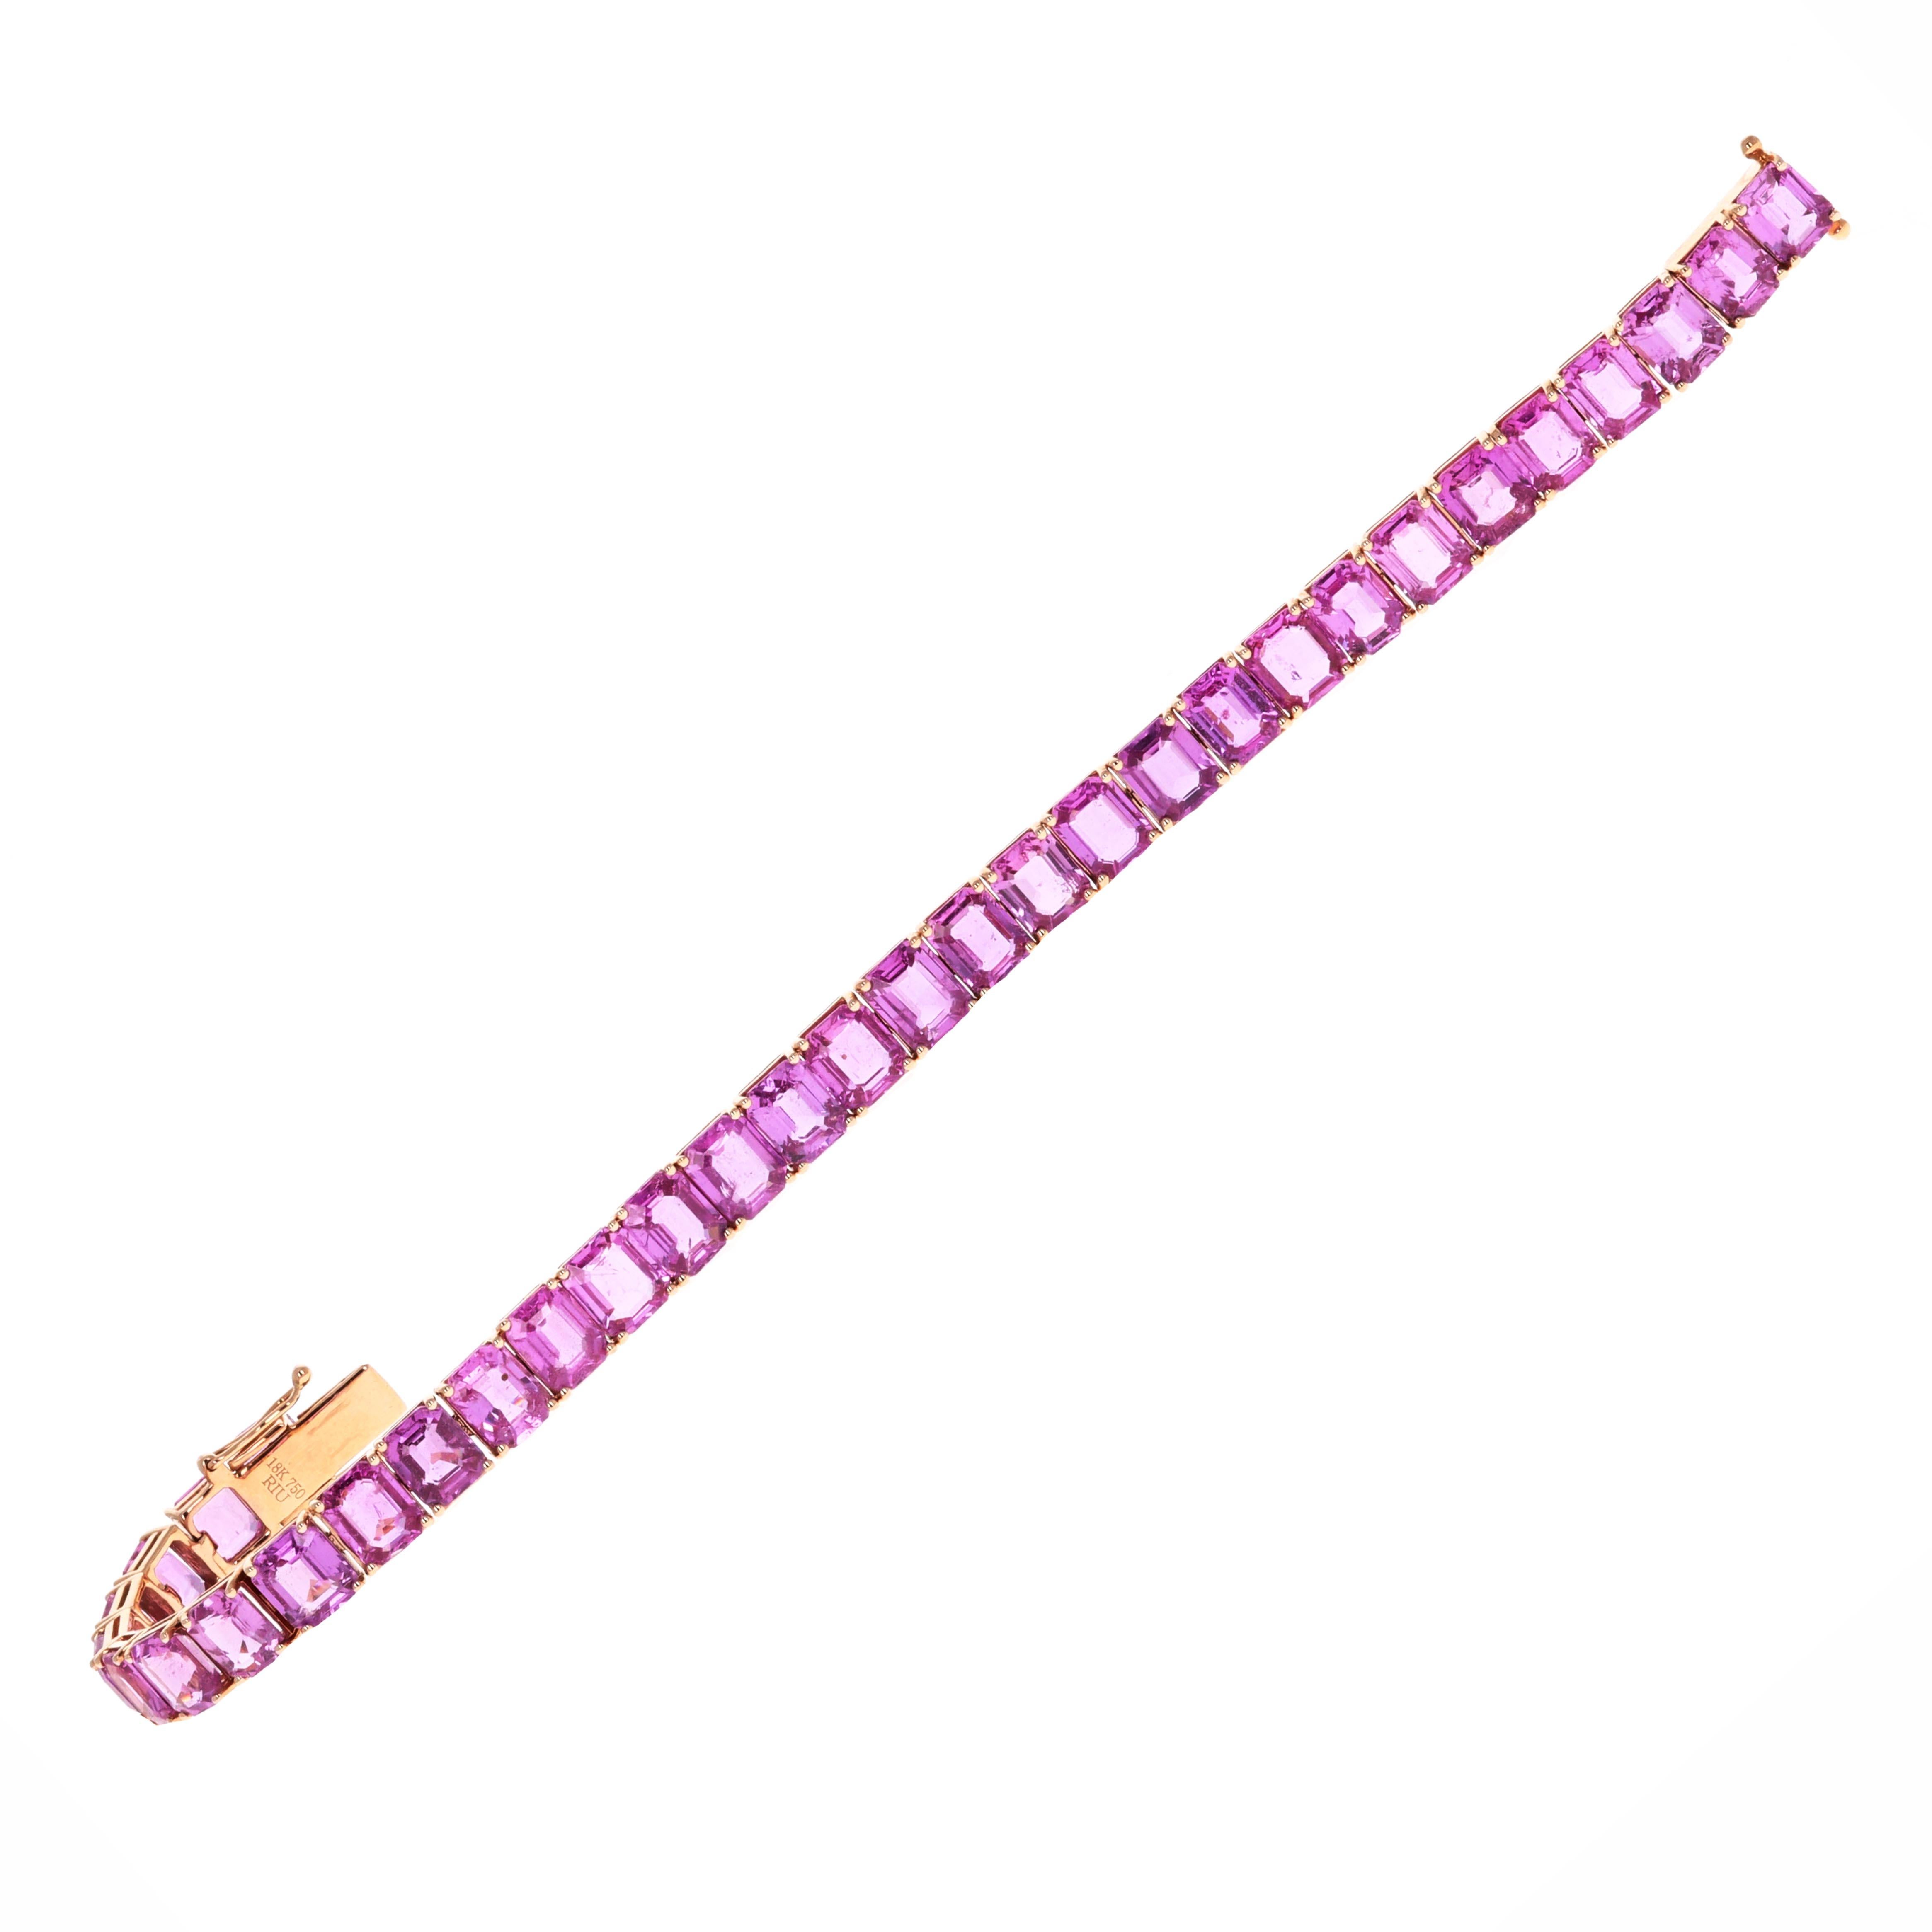 Handgefertigtes Tennisarmband aus 18 Karat Roségold mit rosa Saphiren. Jeder Stein ist perfekt aufeinander abgestimmt und hat eine pinke Farbe. Sie sind im Smaragdschliff und wiegen jeweils über 1 Karat. Es sind 33 Steine mit einem Gesamtgewicht von